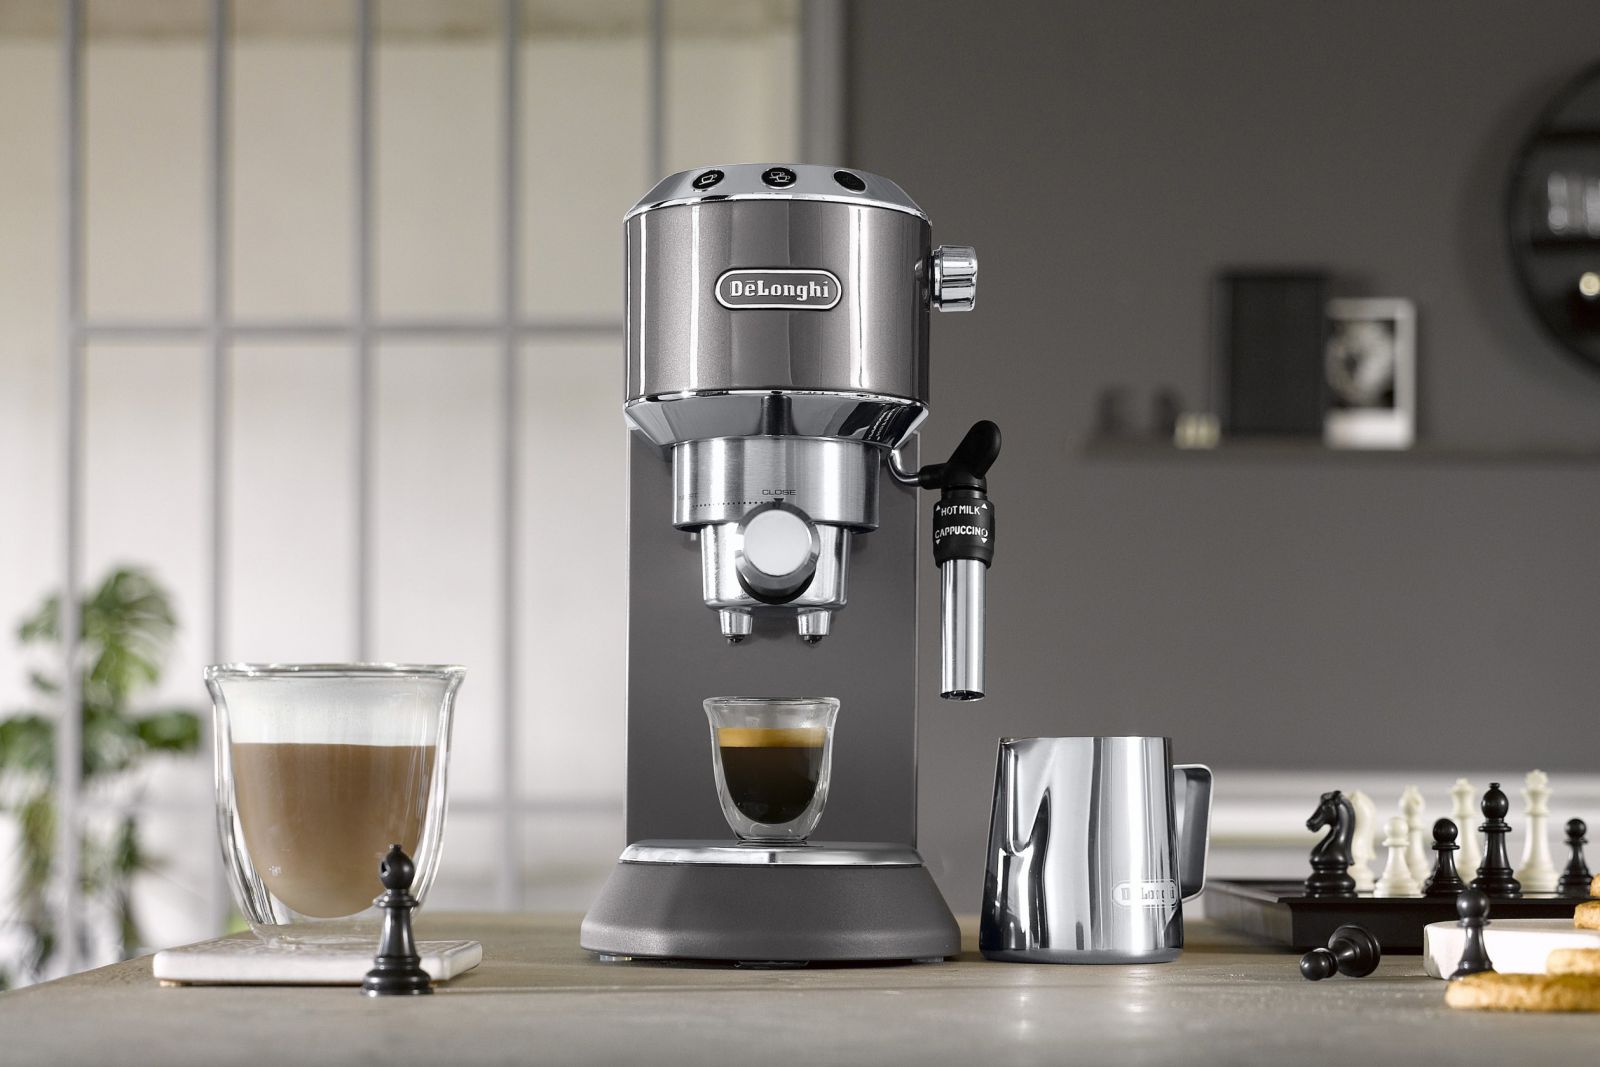 Tư vấn máy pha cà phê gia đình loại nào tốt, giá rẻ và phù hợp nhất?